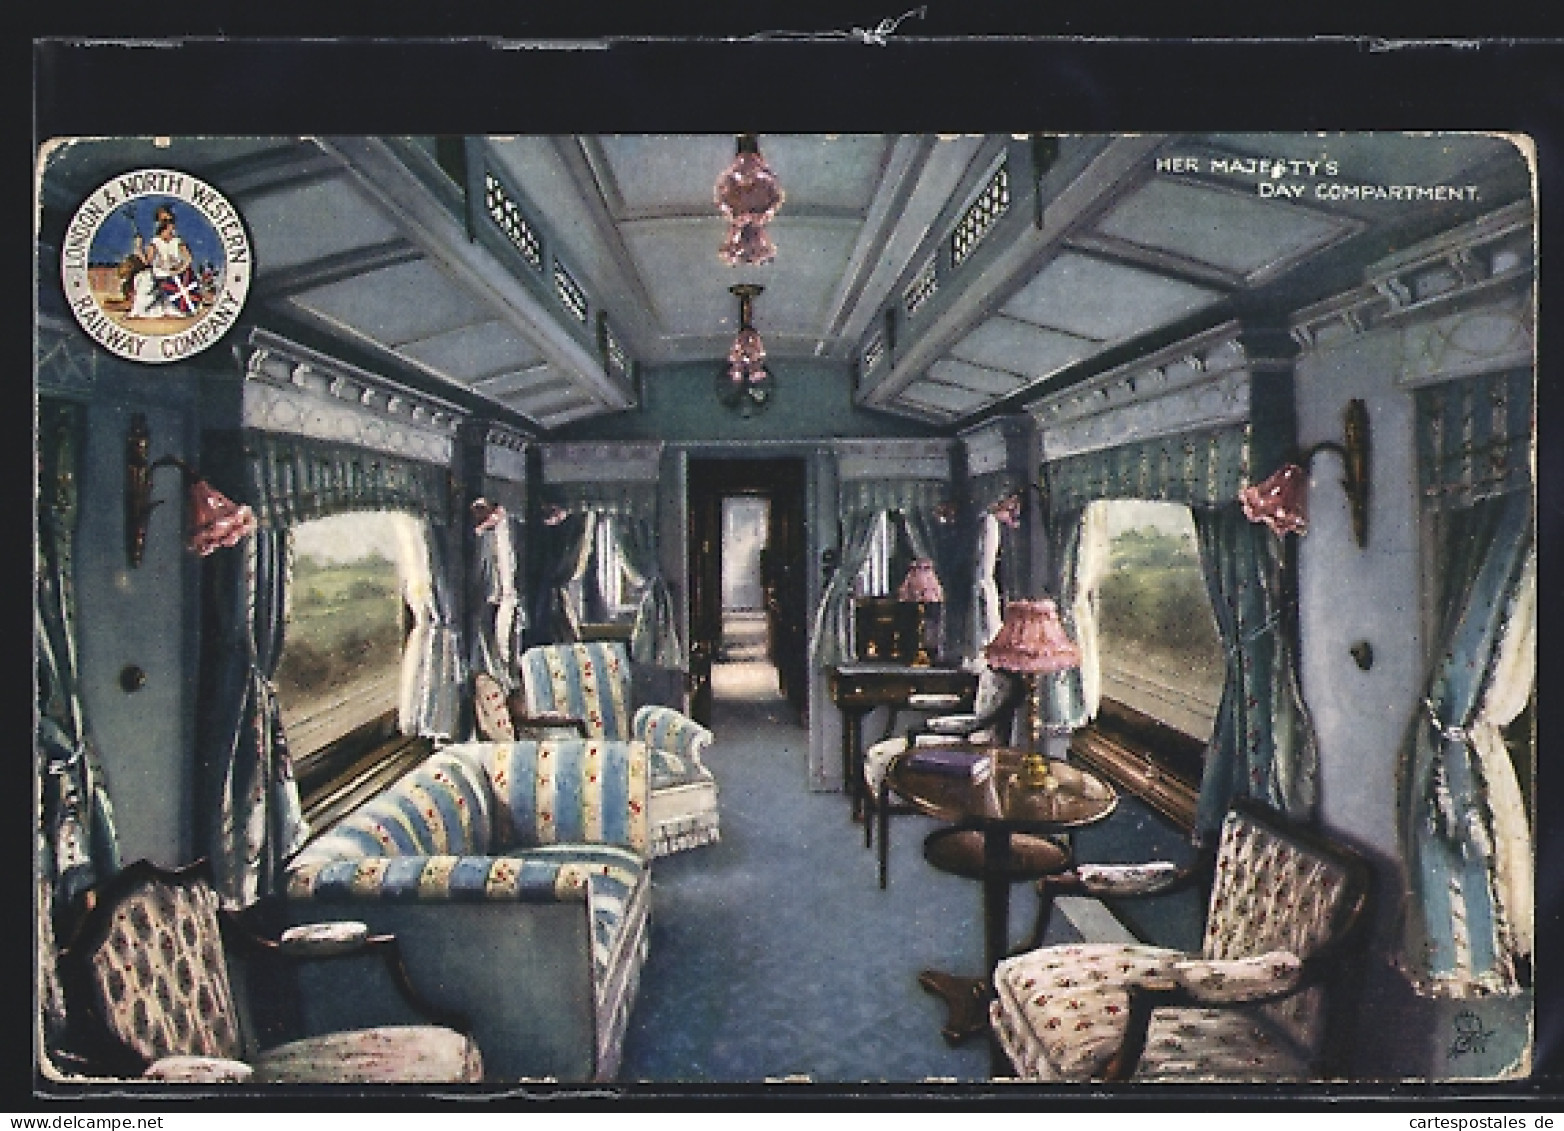 Pc London & North Western Railway Company, Her Majesty`s Day Compartment, Englische Eisenbahn  - Treinen